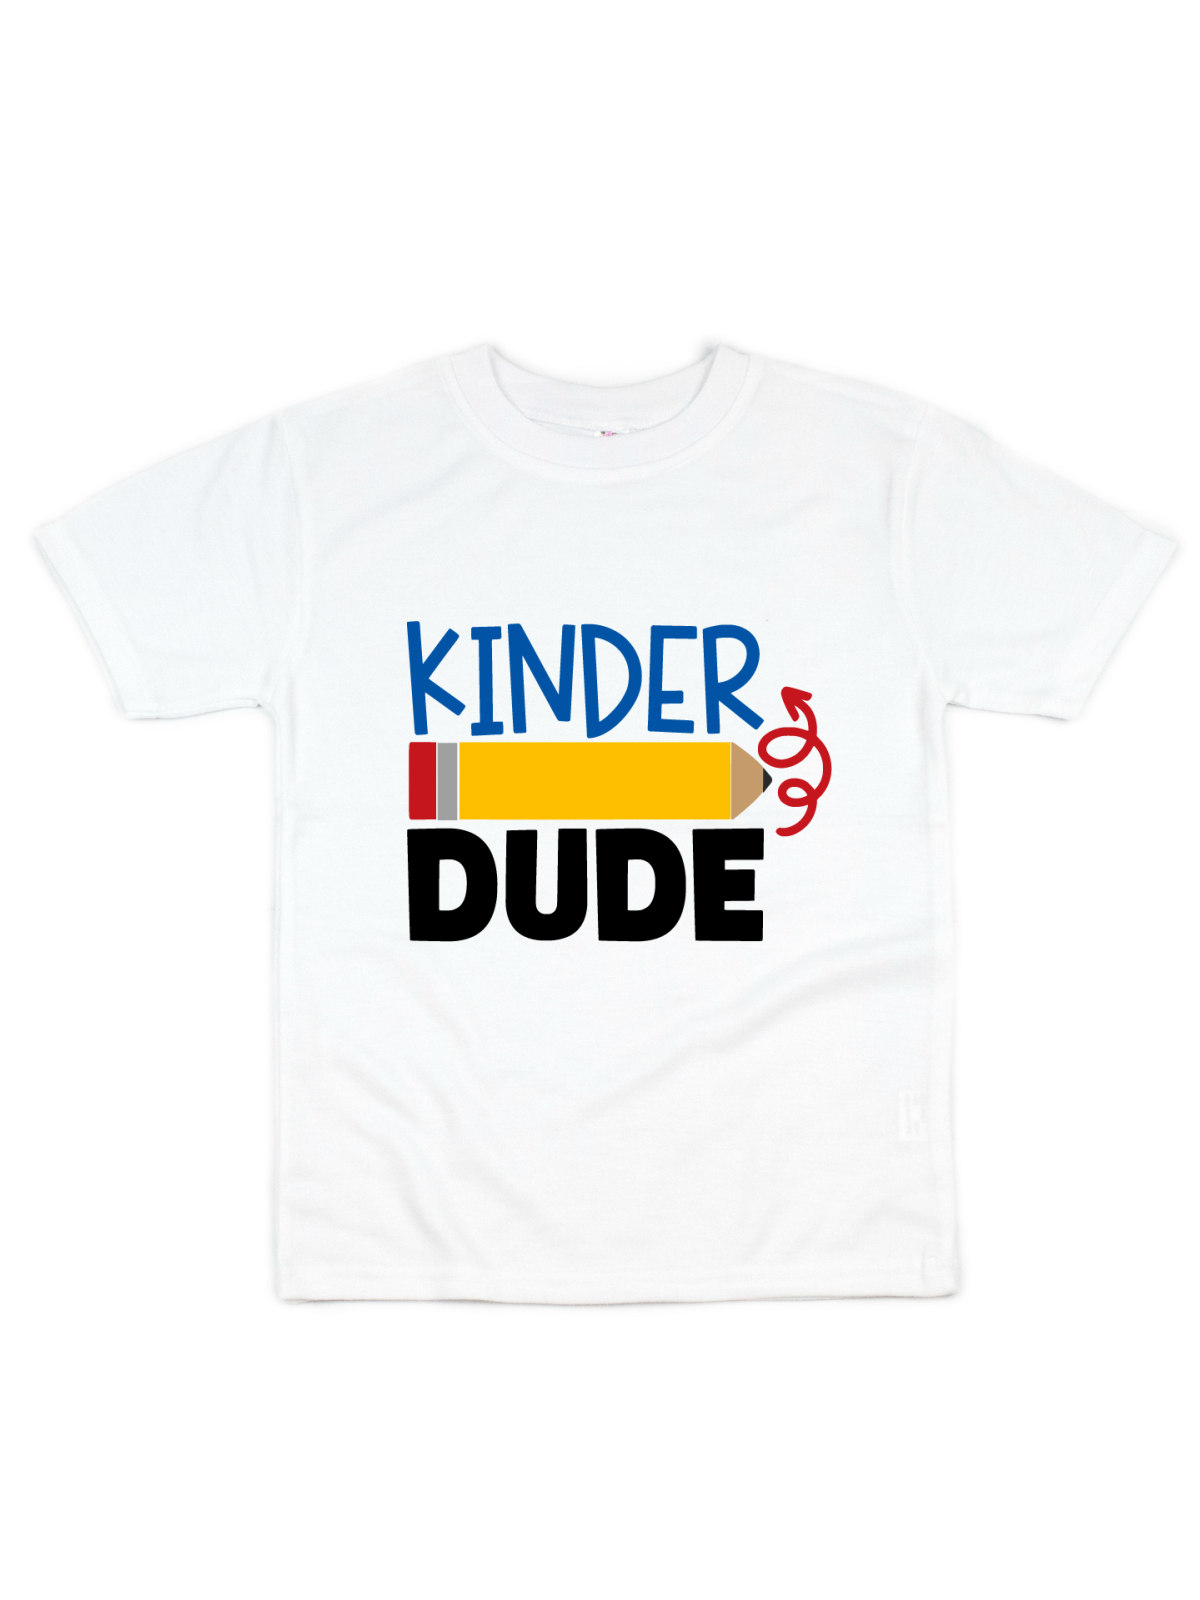 kindergarten dude kids shirt